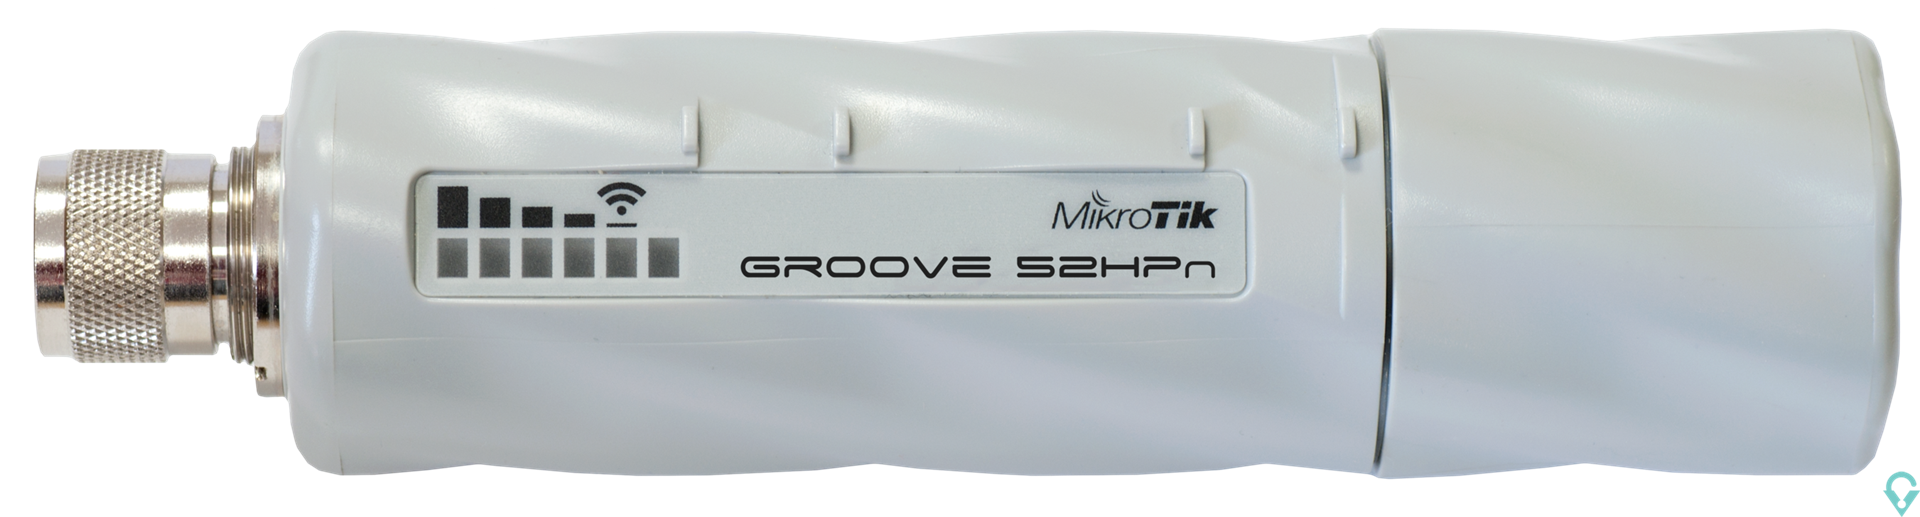 Εικόνα της RBGroove52HPn Groove 52 with N-male connector, High Gain Single Chain 2.4GHz / 5GHz 802.11abgn wireless, 600MHz CPU, 64MB RAM, 1